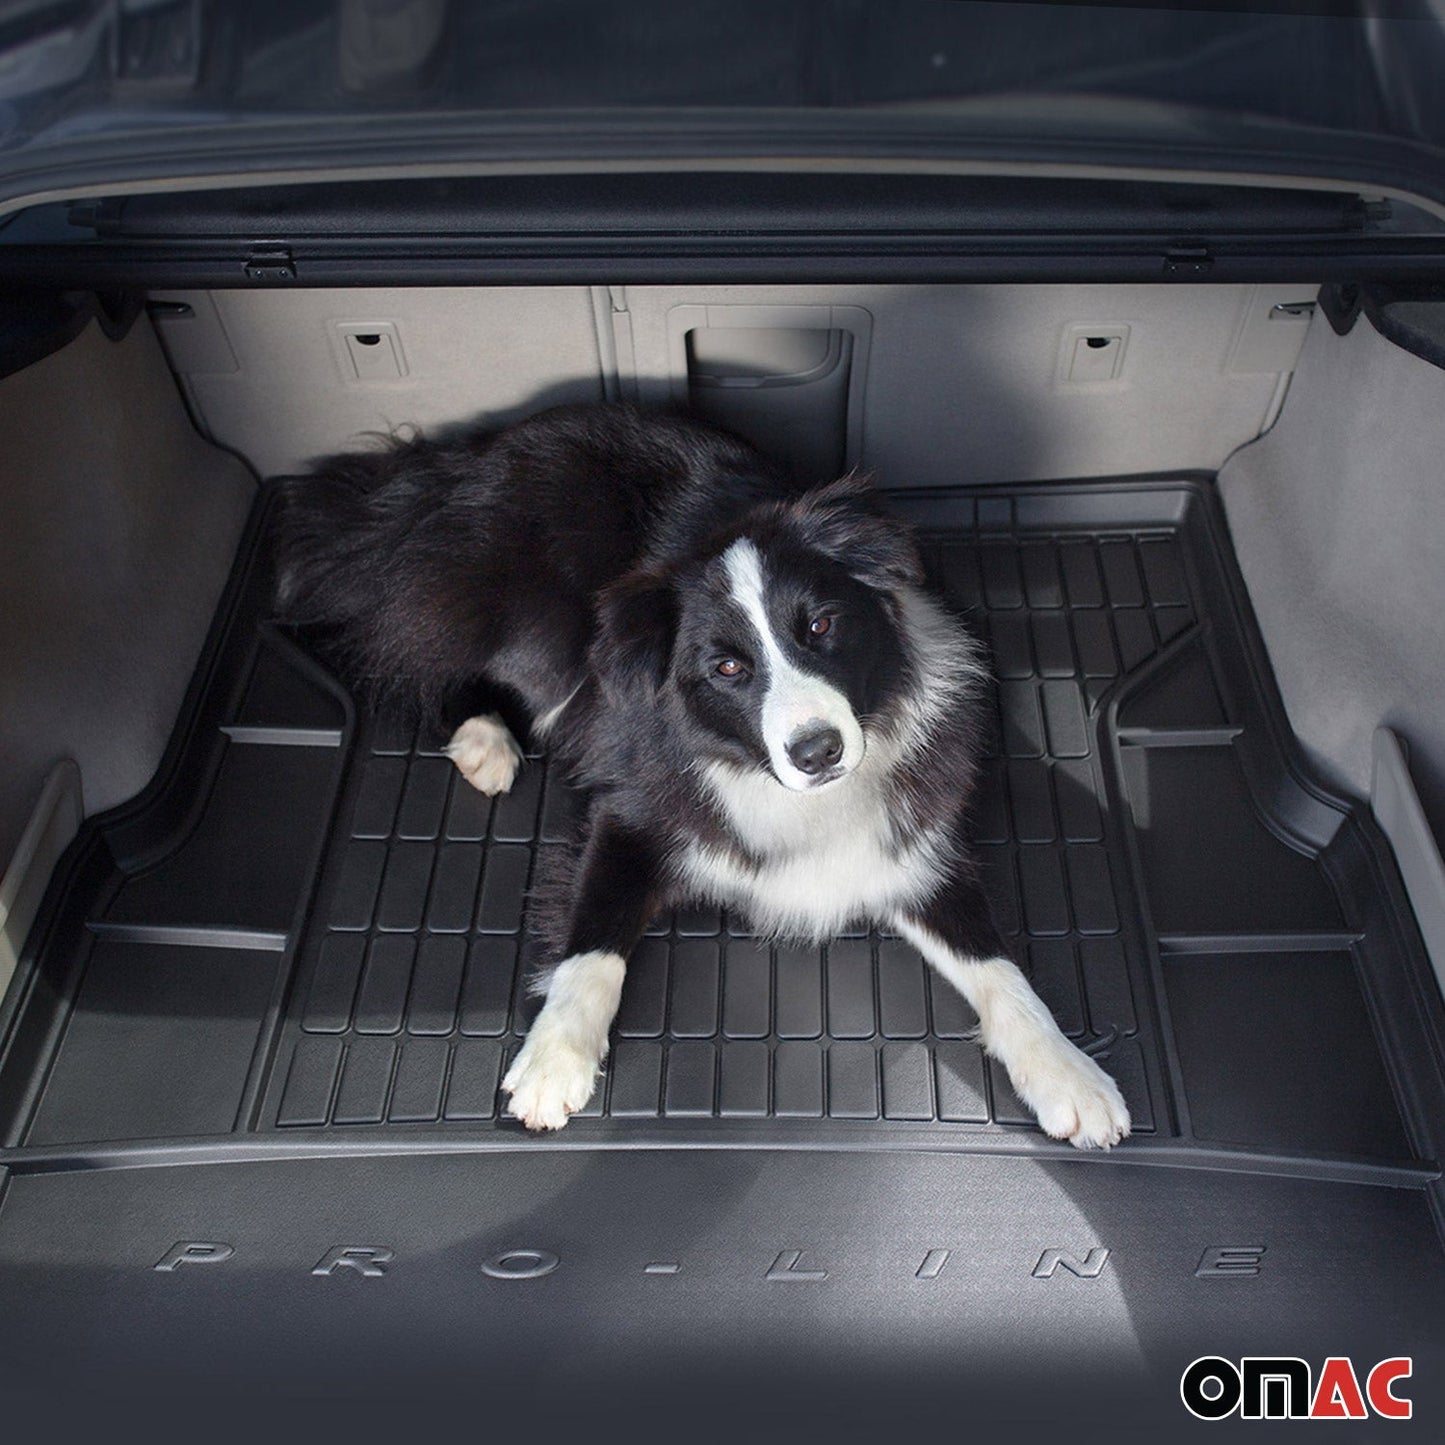 OMAC Premium 3D Floor Mats & Trunk Liner Set Black For BMW X5 (F15) 2014-2018 1221454-260